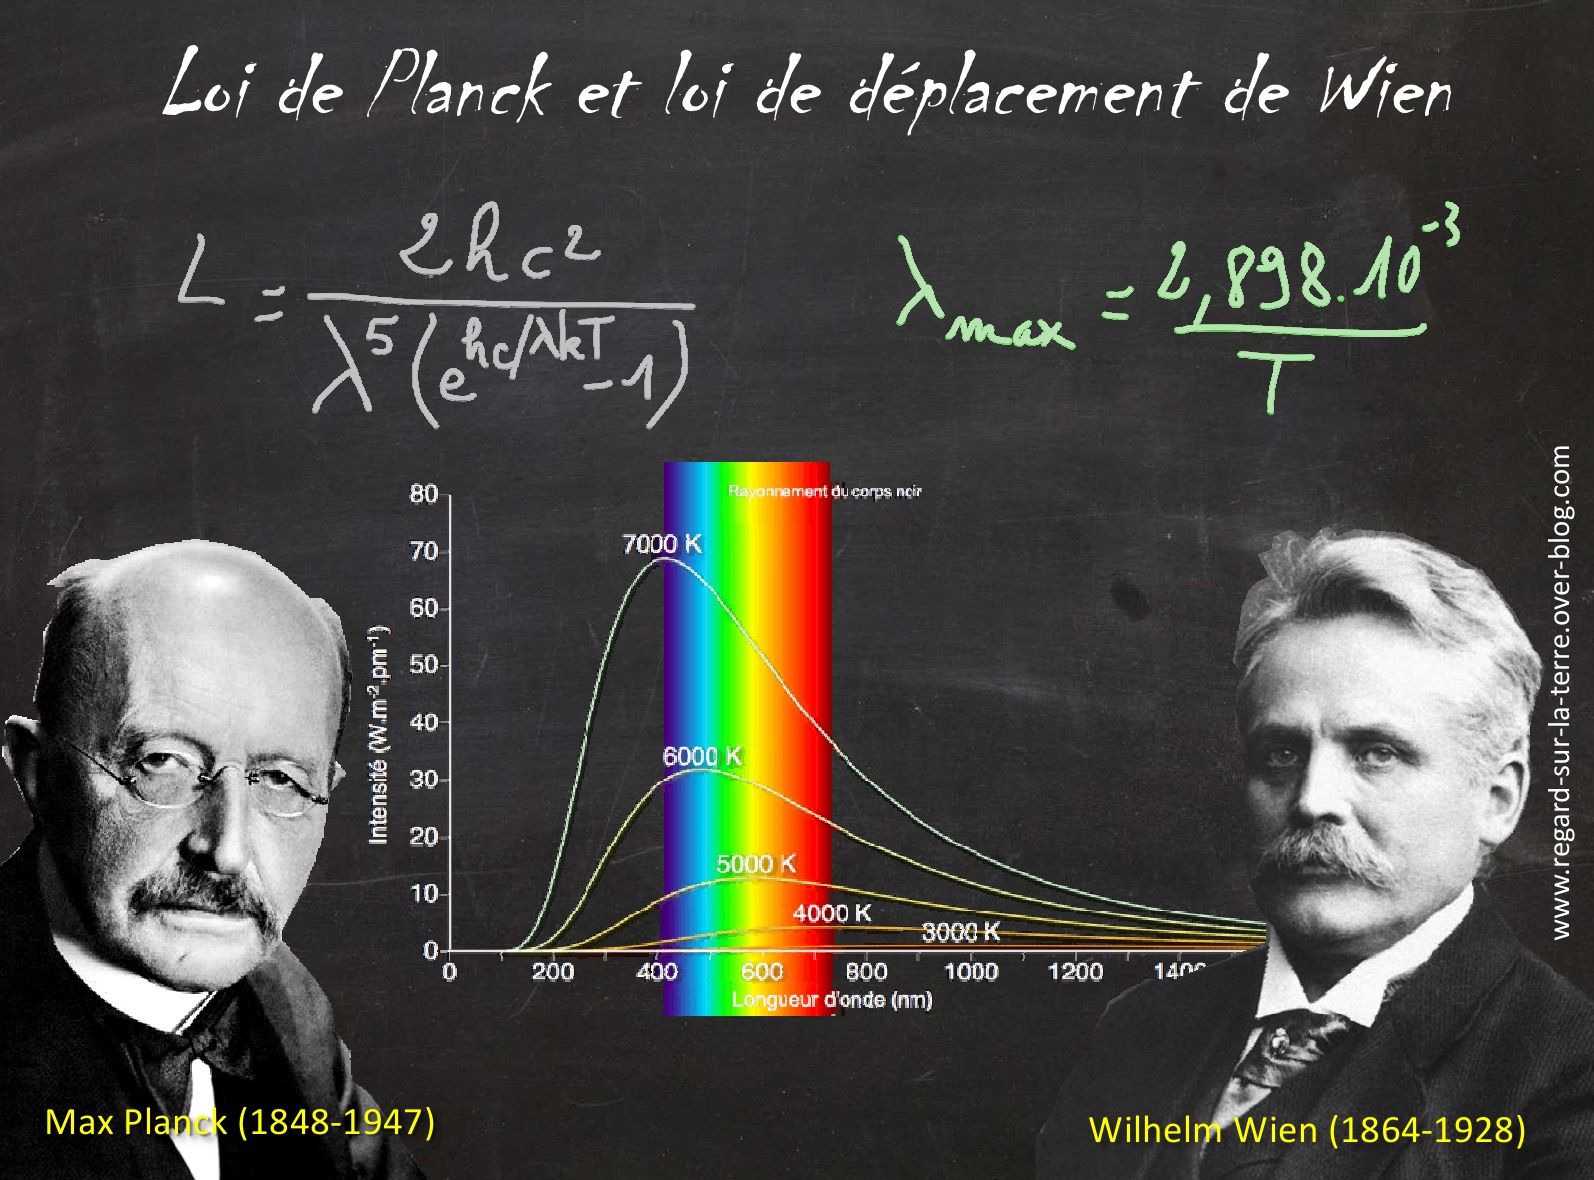 Max Planck - Wilhelm Wien - Corps noir - Spectre d'émission - Température - Loi de planck - déplacement de Wien - Prix Nobel de Physique - Rayonnement